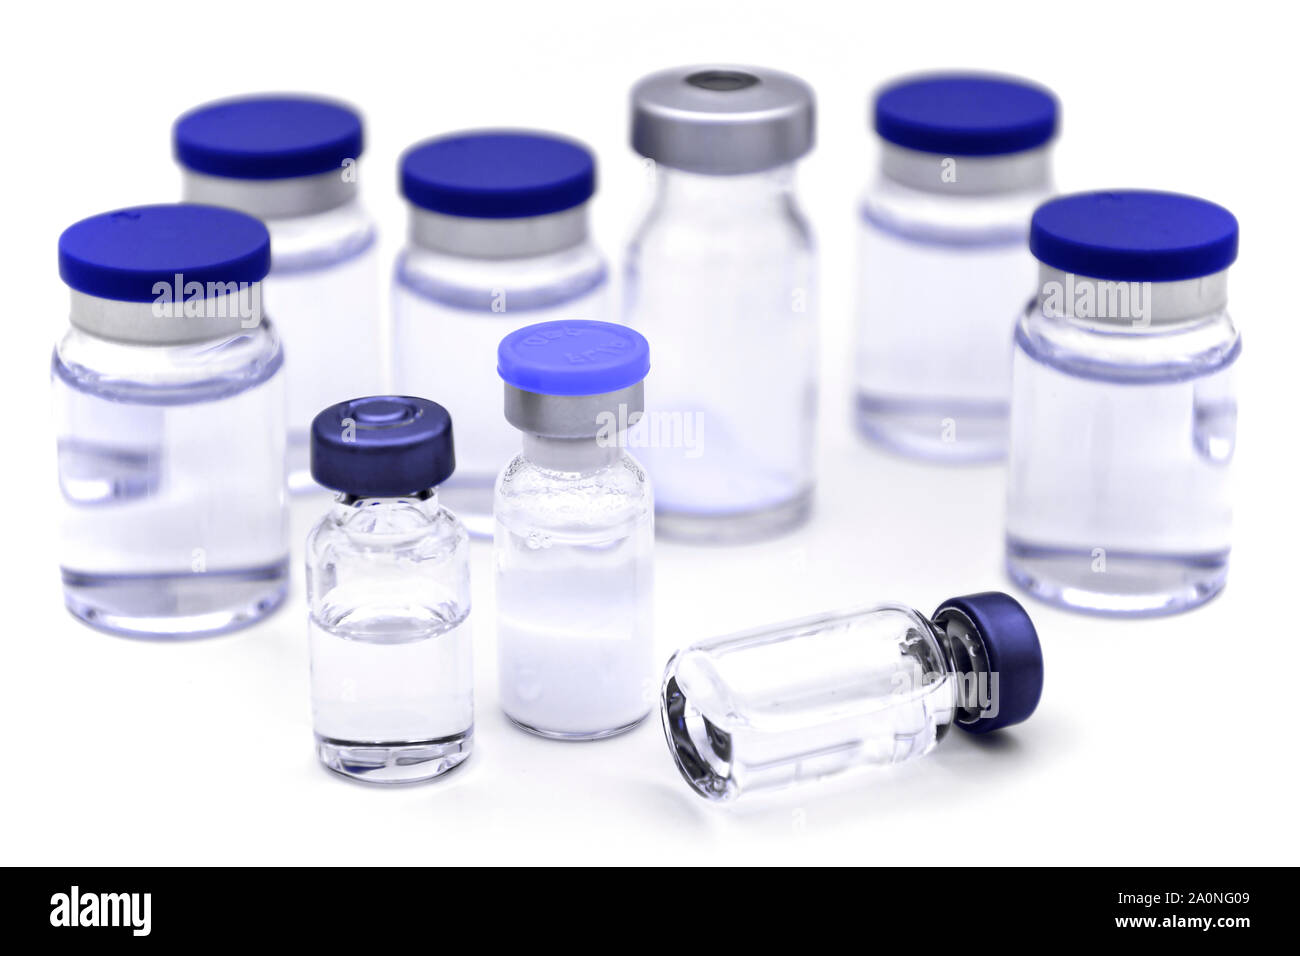 Fiale sterili di prodotti farmaceutici per iniezione su sfondo bianco. Foto Stock